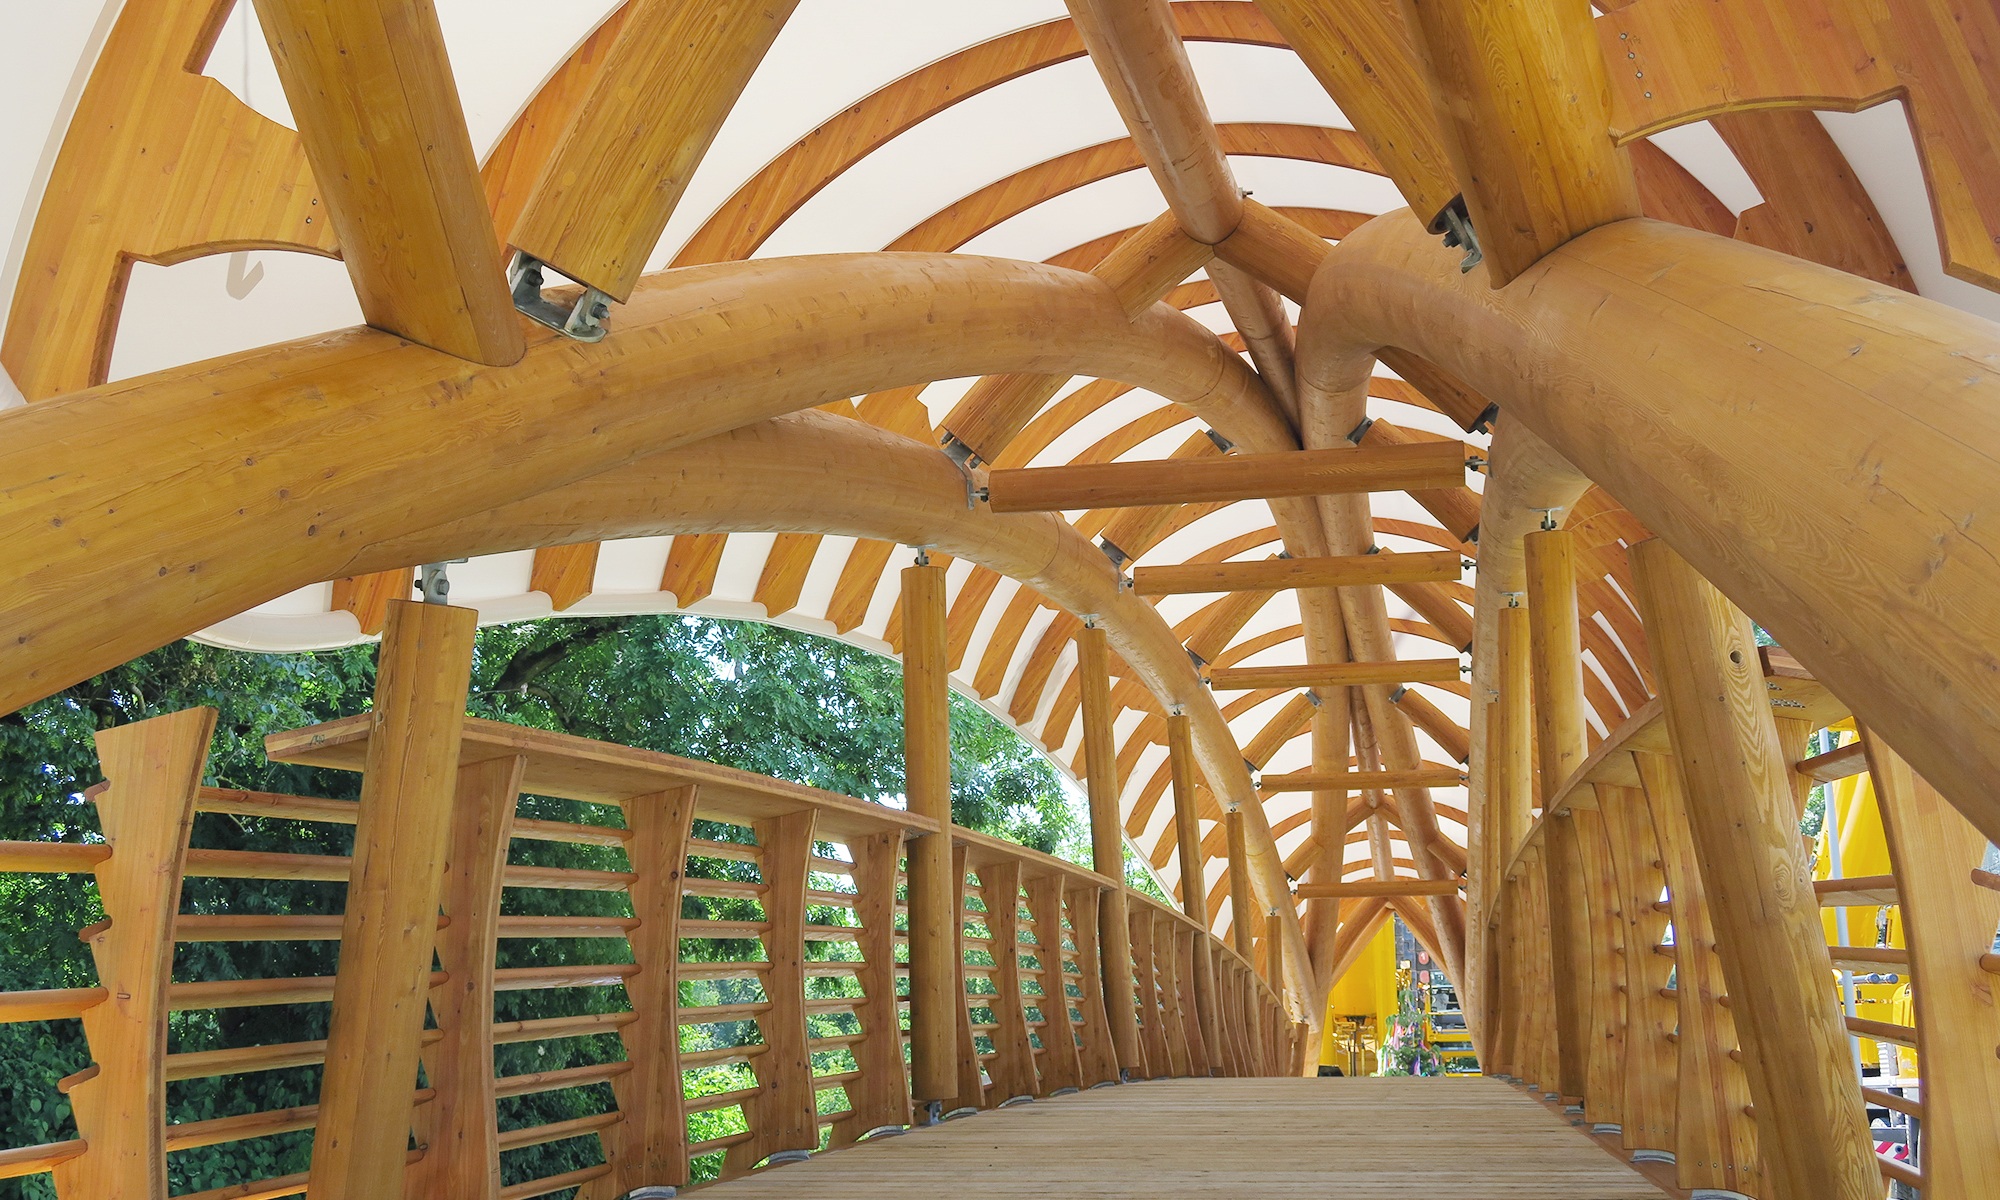 Die Holzkunstbrücke Aubrugg ist von innen zu sehen. Geschwungene massive Holzstrukturen und ein hohes Holzgeländer sind zu erkennen.